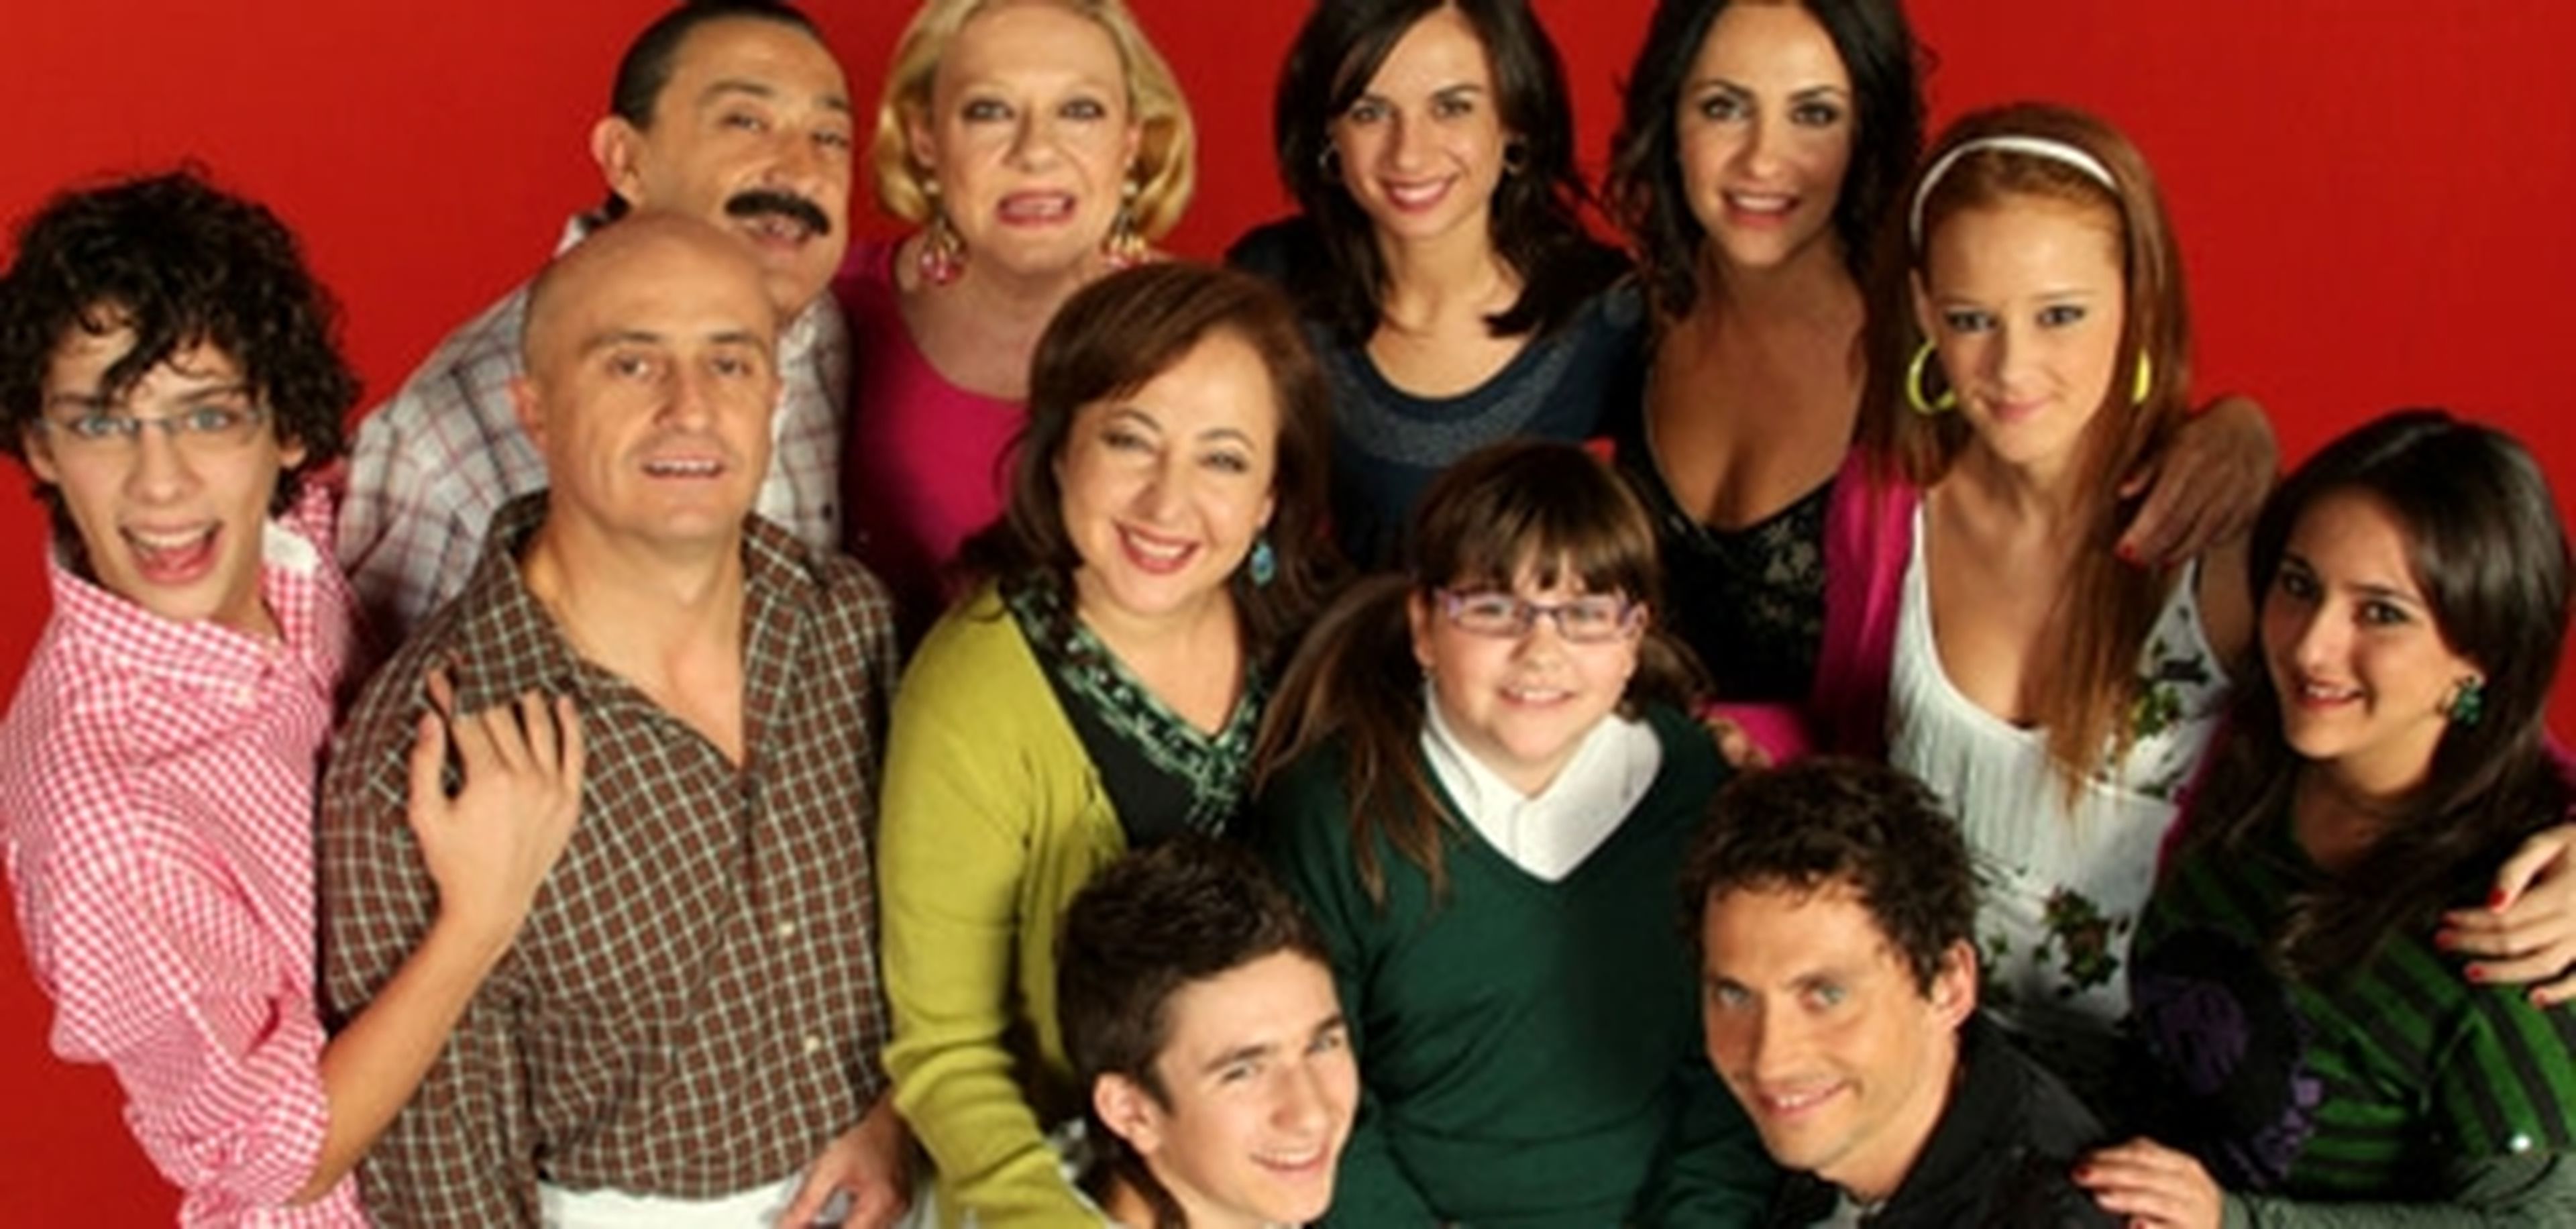 7 vidas, Aída, La que se avecina... Las 15 mejores series de humor españolas